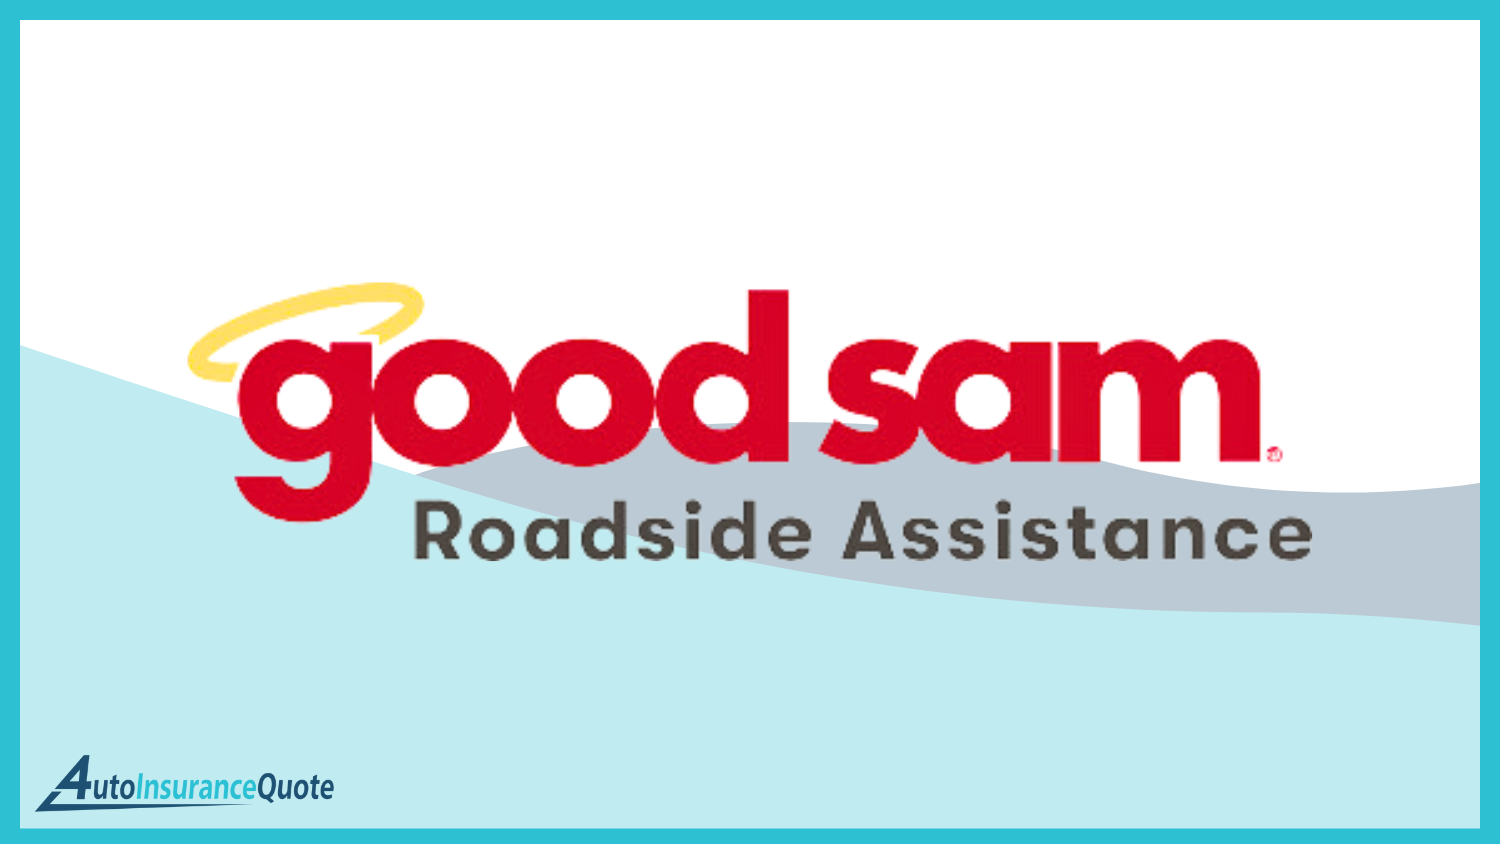 Good Sam: Best Roadside Assistance Coverage